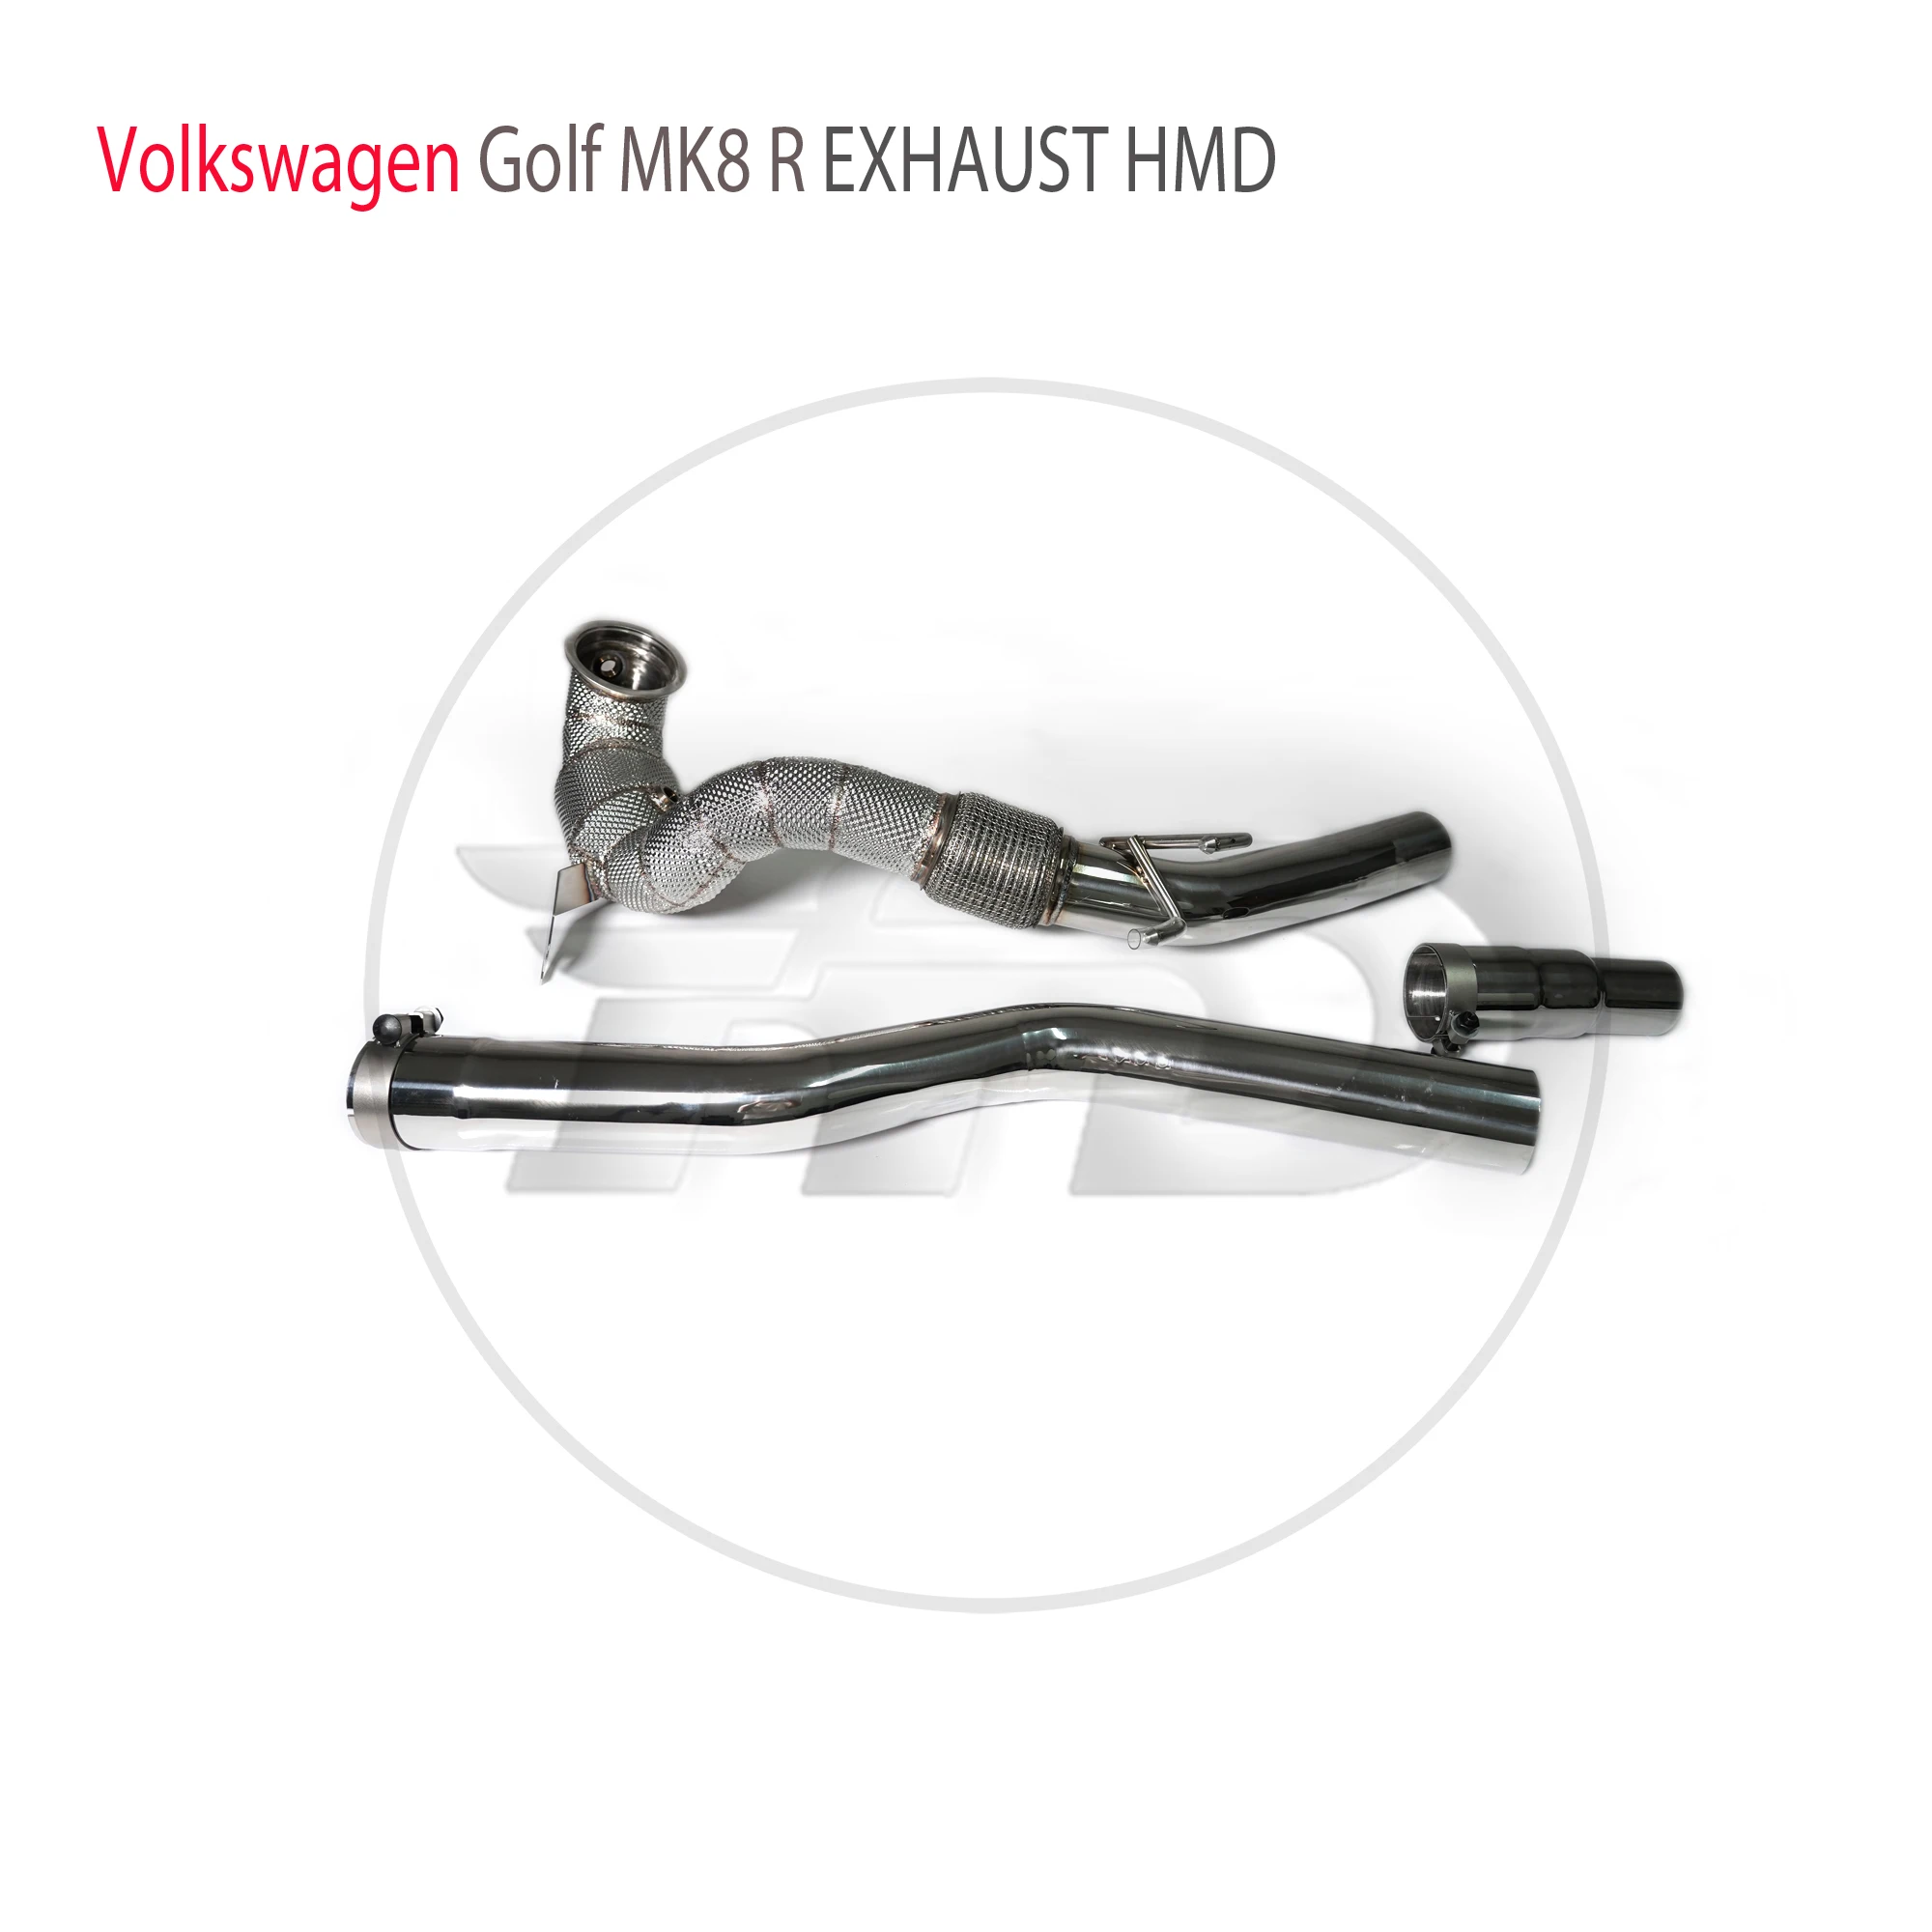 

Выхлопная система HMD, высокопроизводительная труба потока для Volkswagen Golf MK8 R, каталитический конвертер